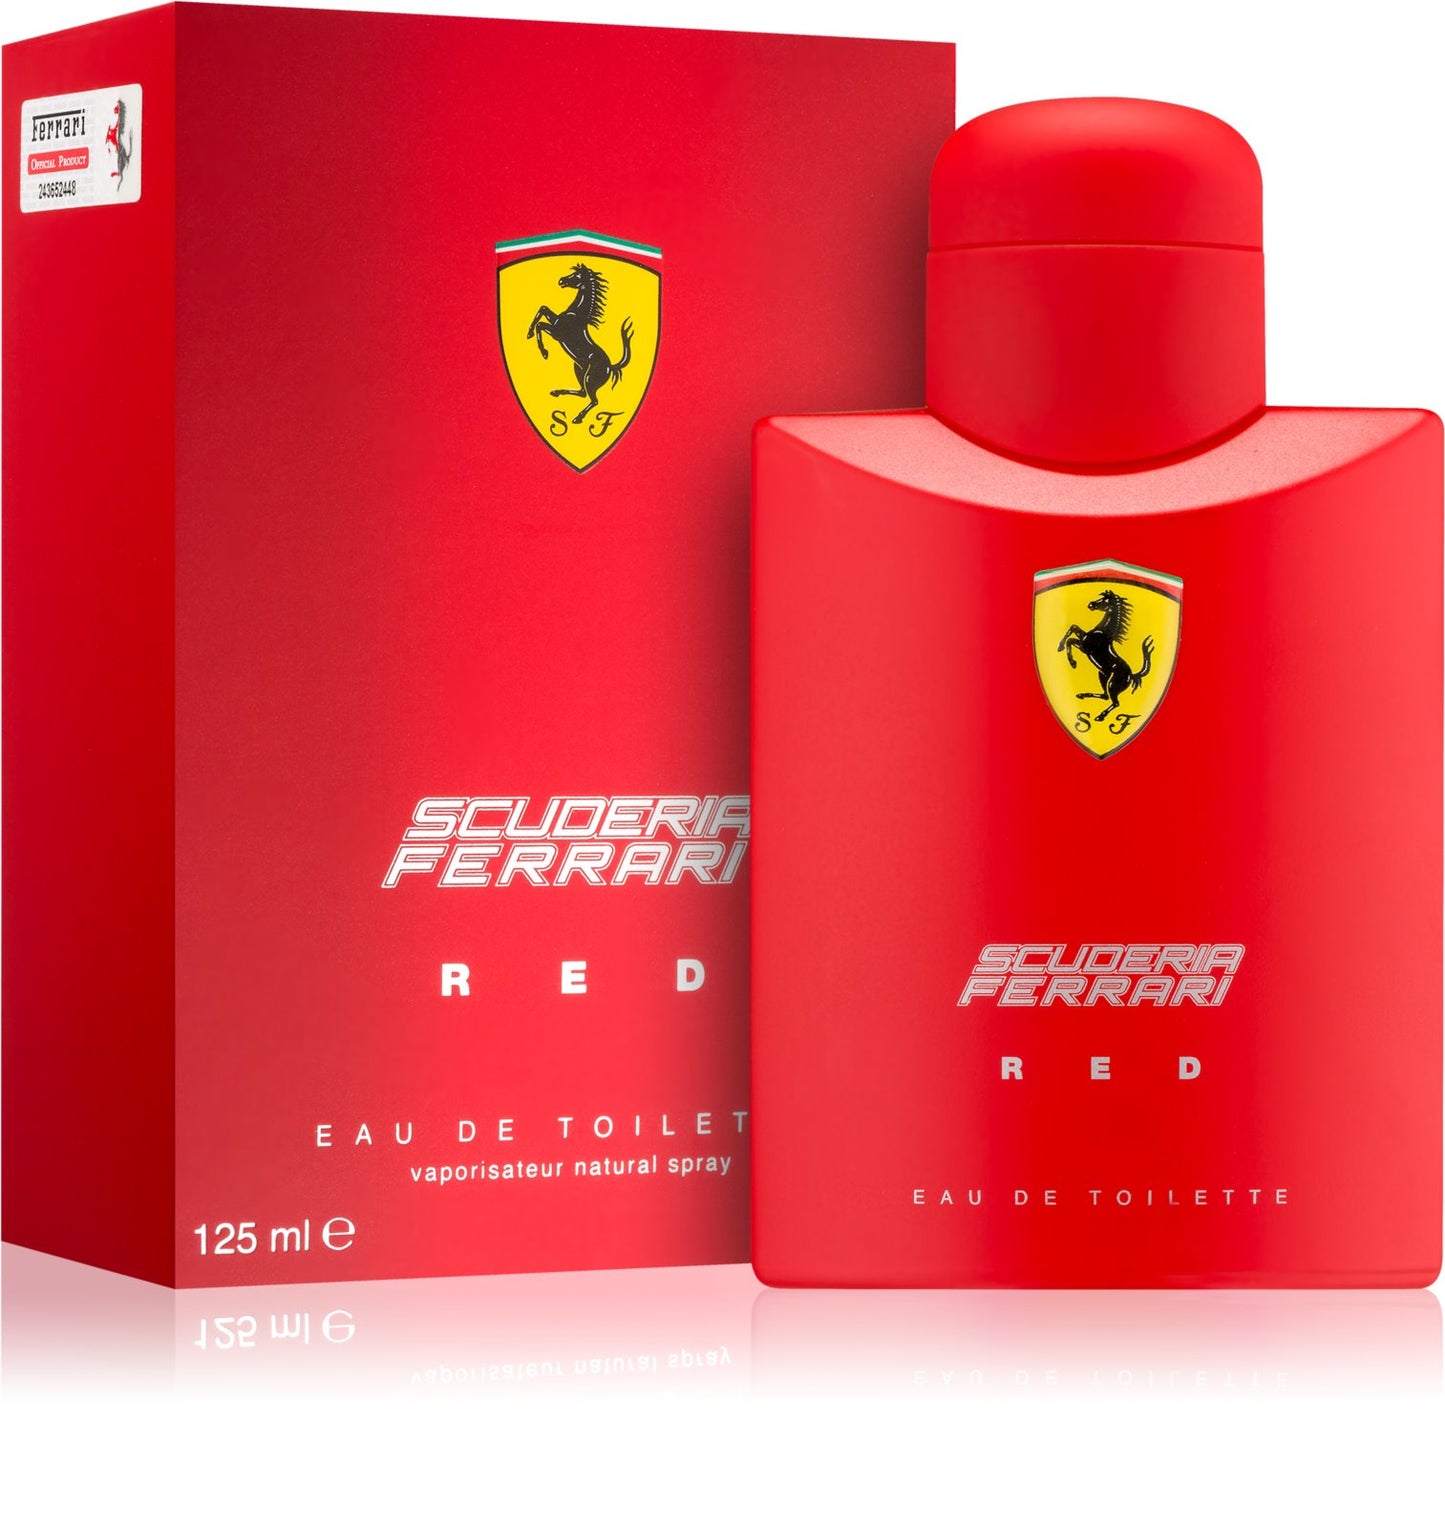 Scuderia Ferrari Red EDT - Perfume Planet 